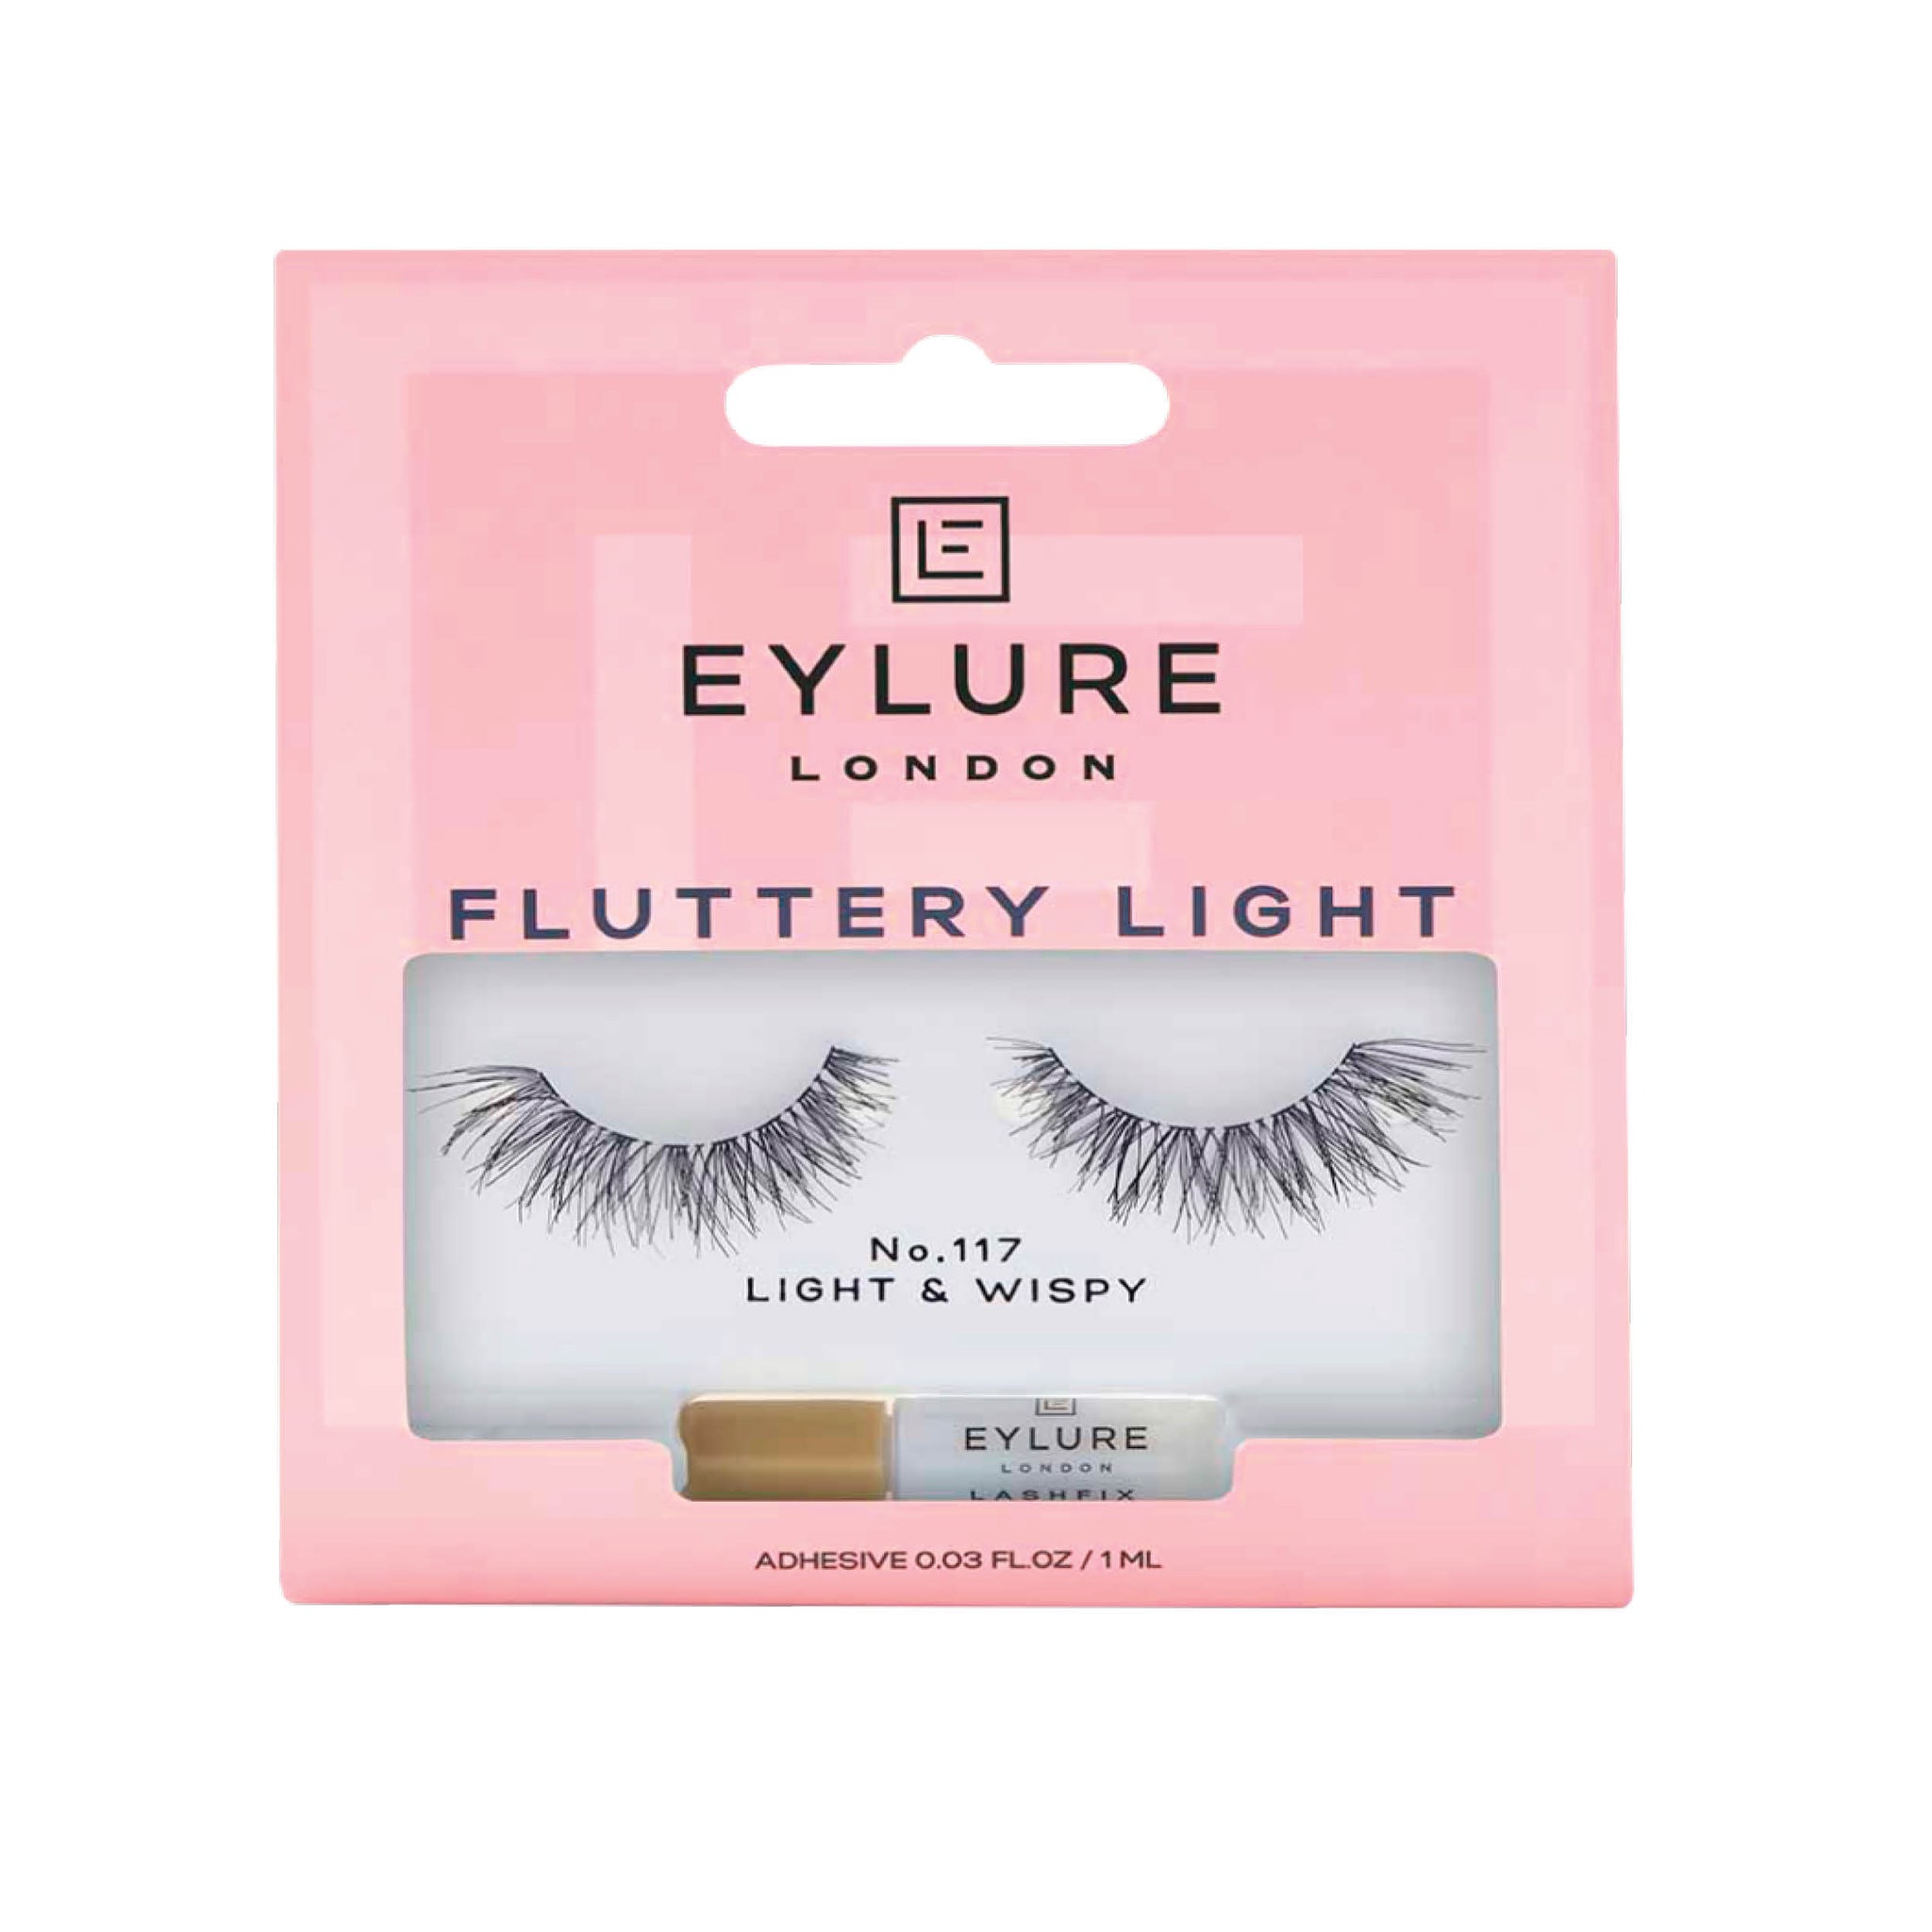 Eylure Fluttery LIGHT False Eyelashes No. 117